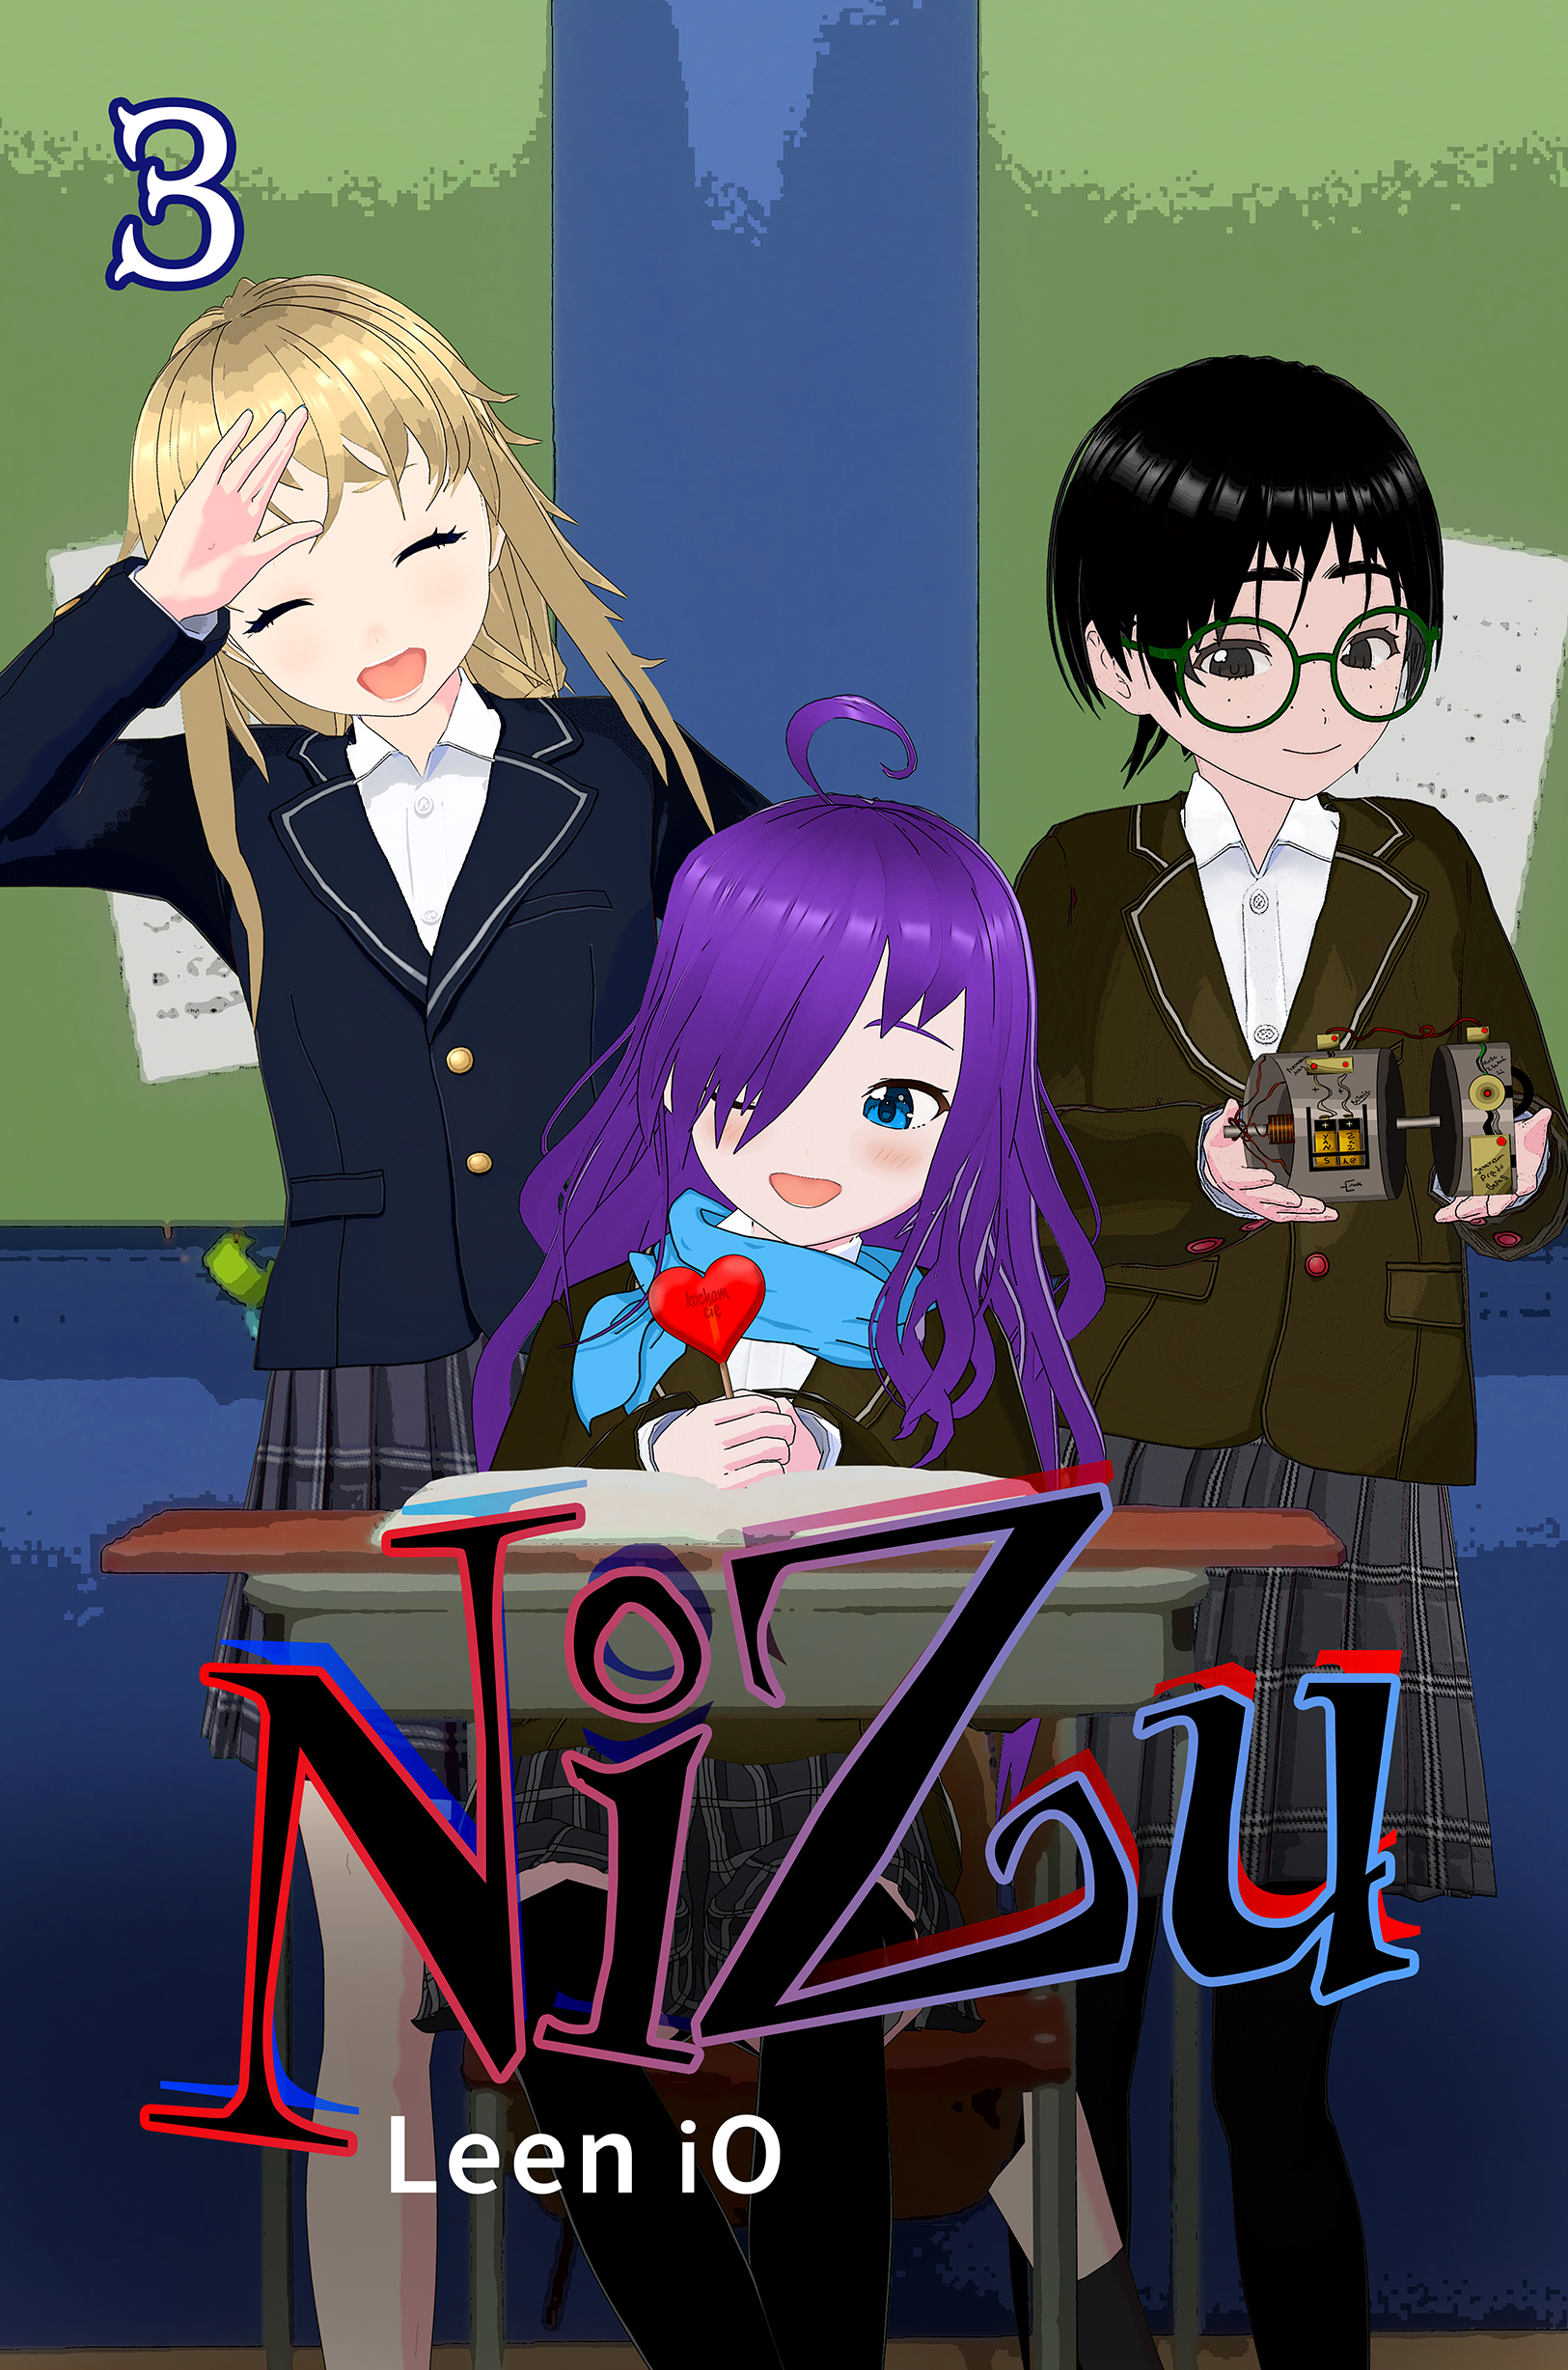 Nizu manga capítulo 3 "amigos"